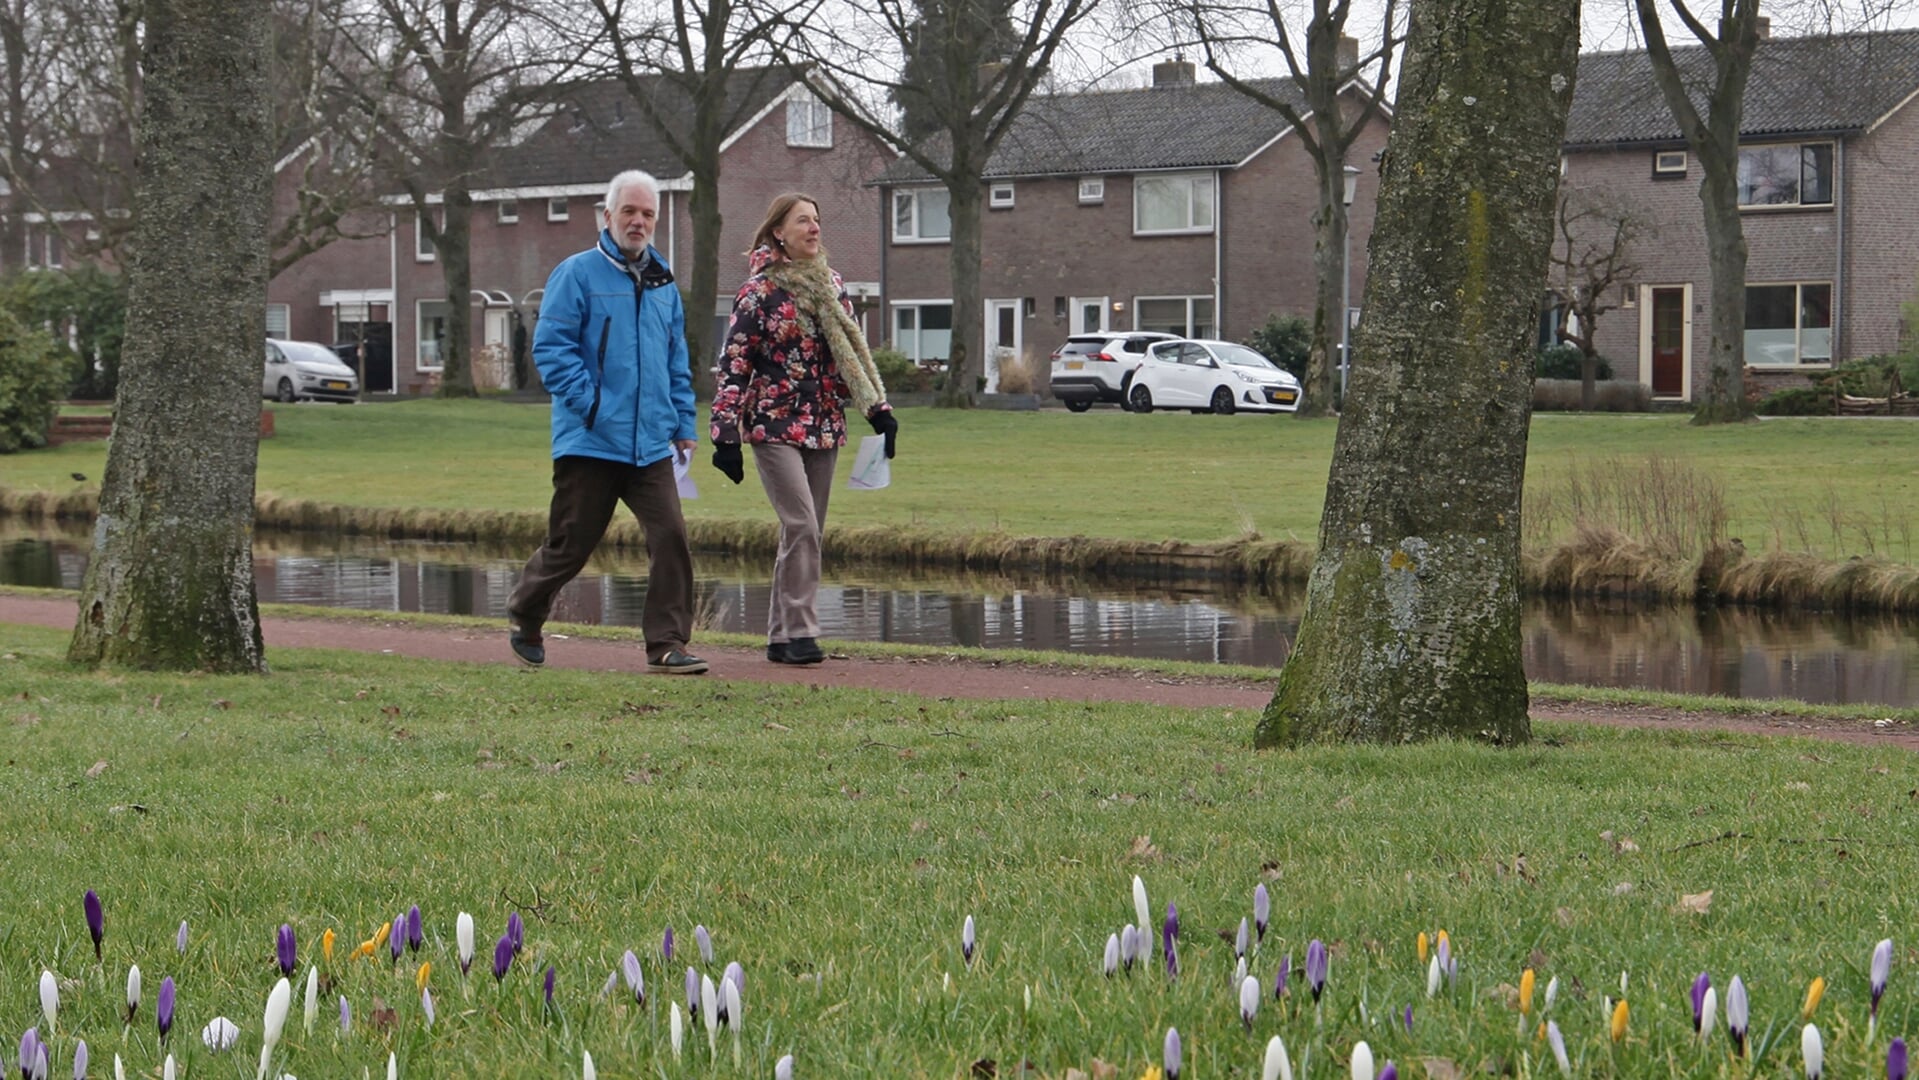 Deelnemers in actie tijdens een eerdere wandelactiviteit van Veendam Beweegt. Foto: Bert Woltjes.